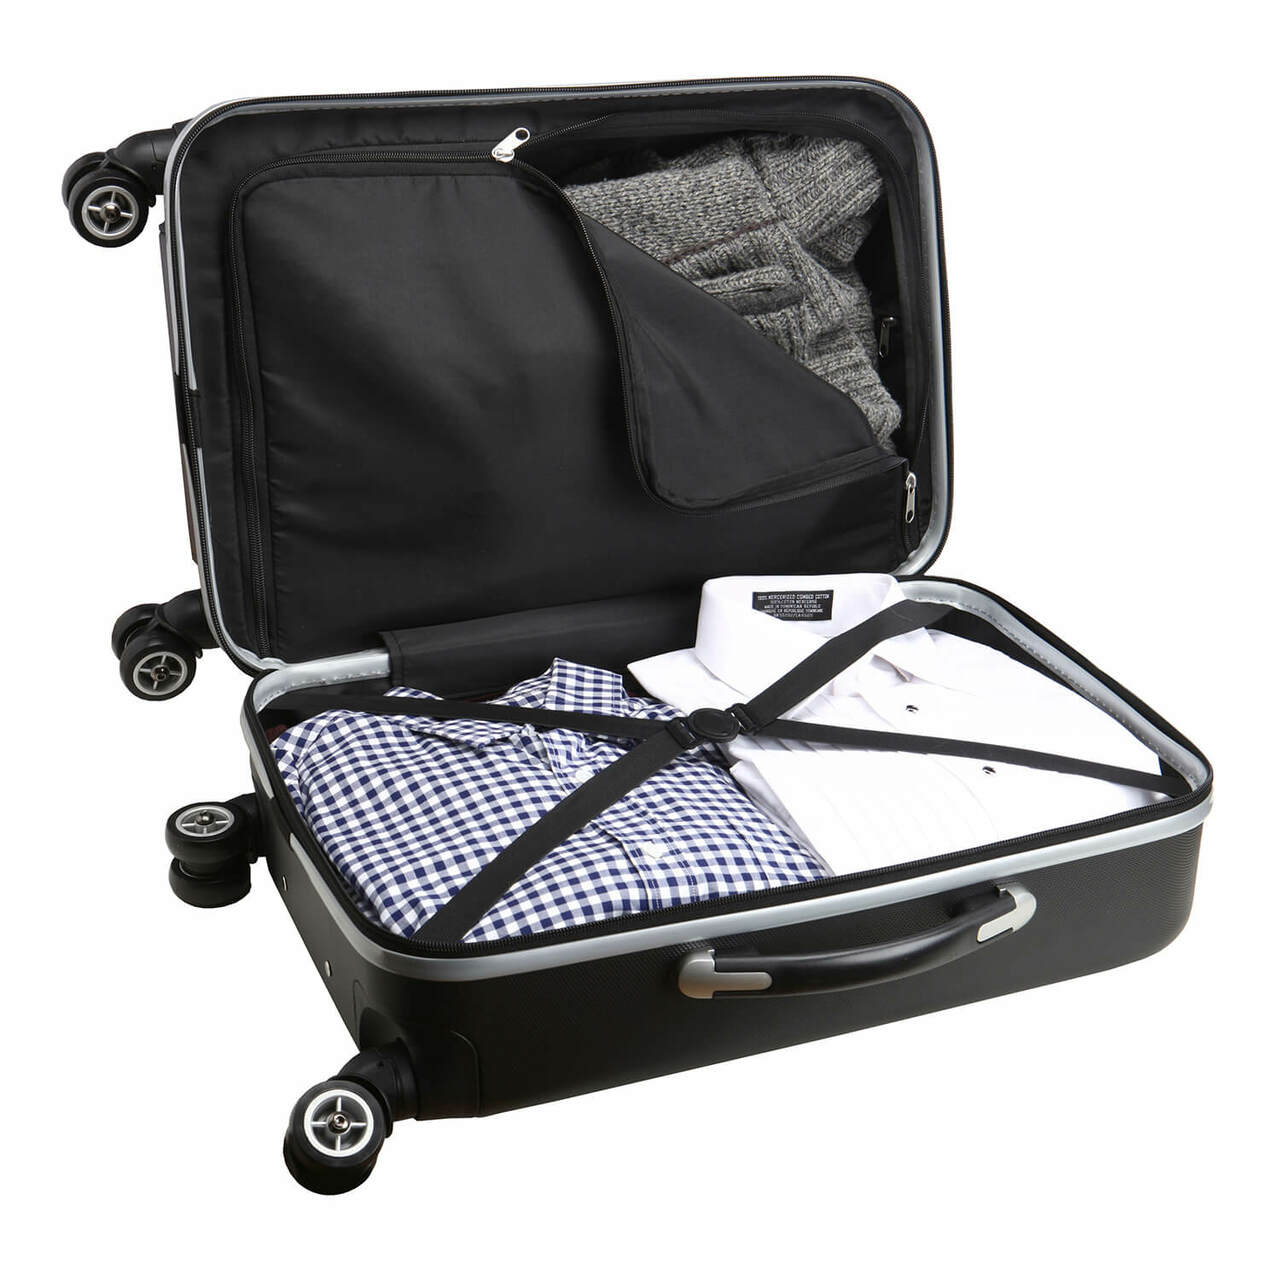 Toronto Blue Jays 20" Hardcase Luggage Carry-on Spinner